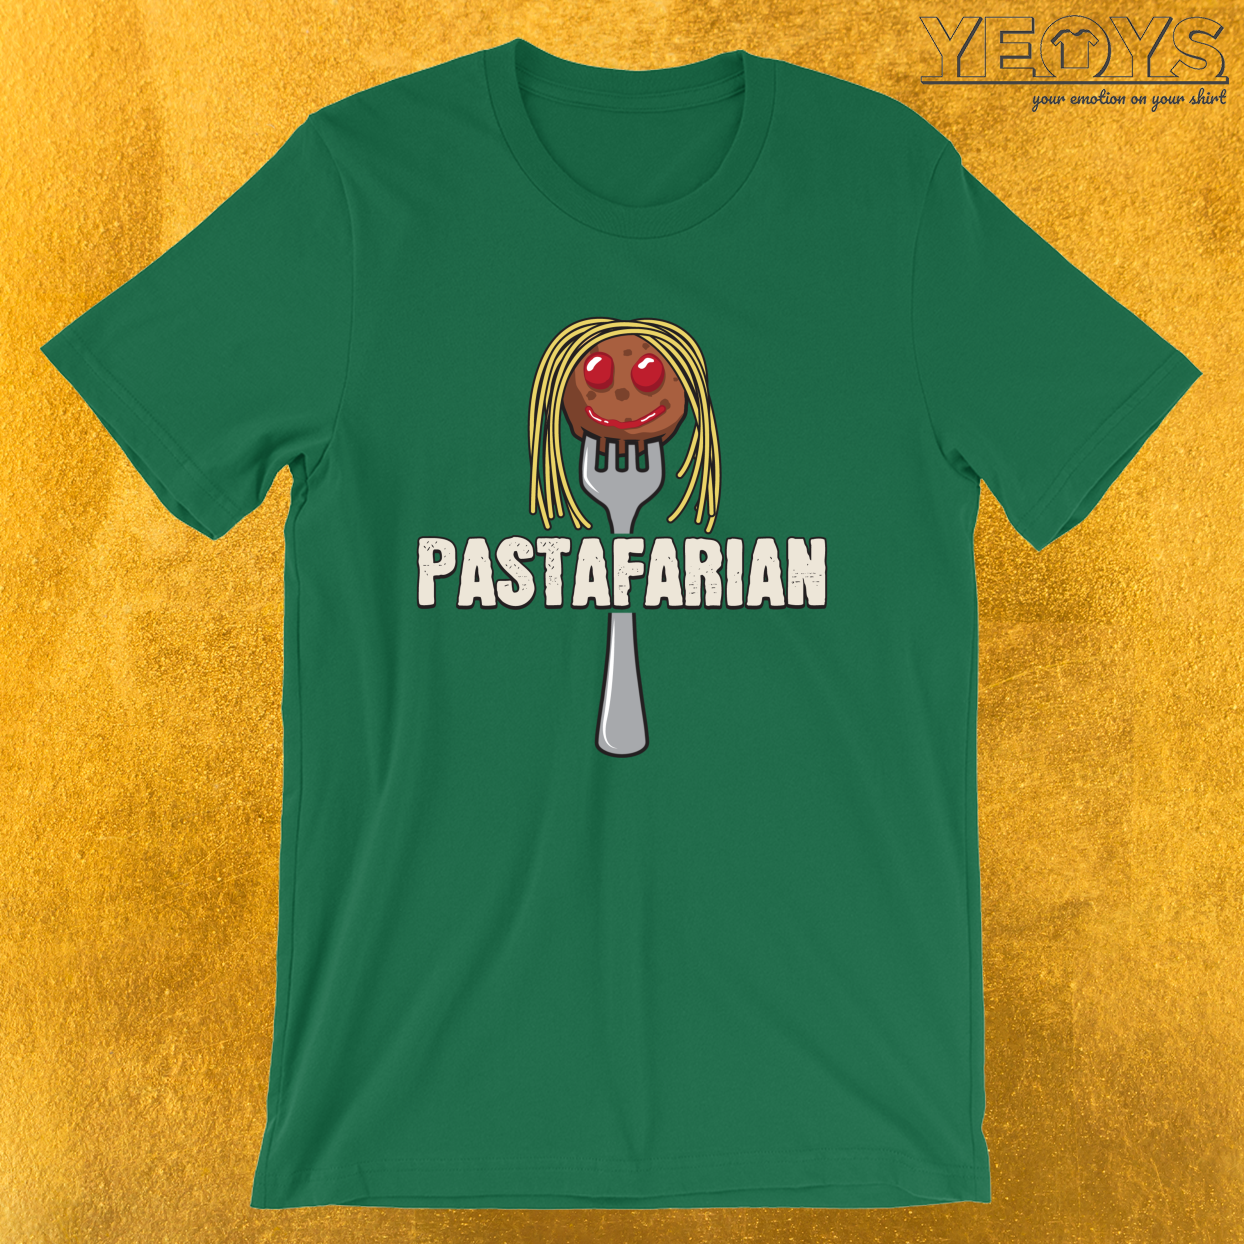 Pastafarian – Funny I Love Italian Pasta Tee